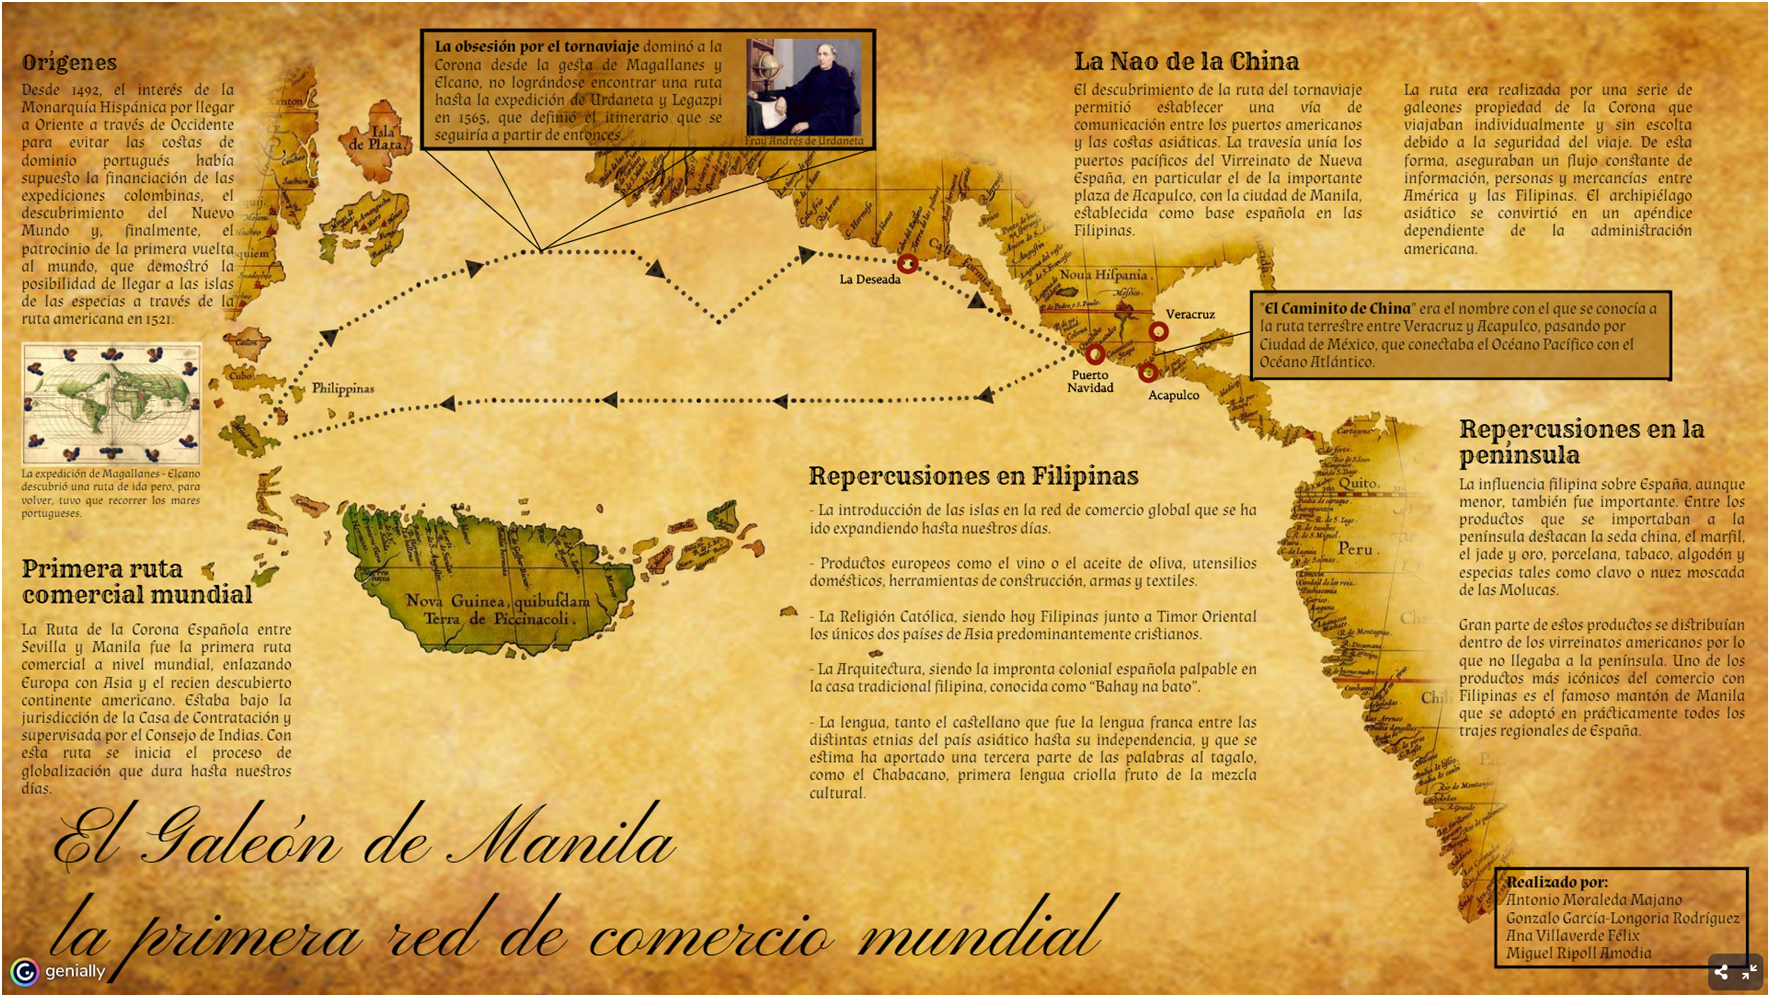 El Galeón de Manila: la primera red de comercio mundial